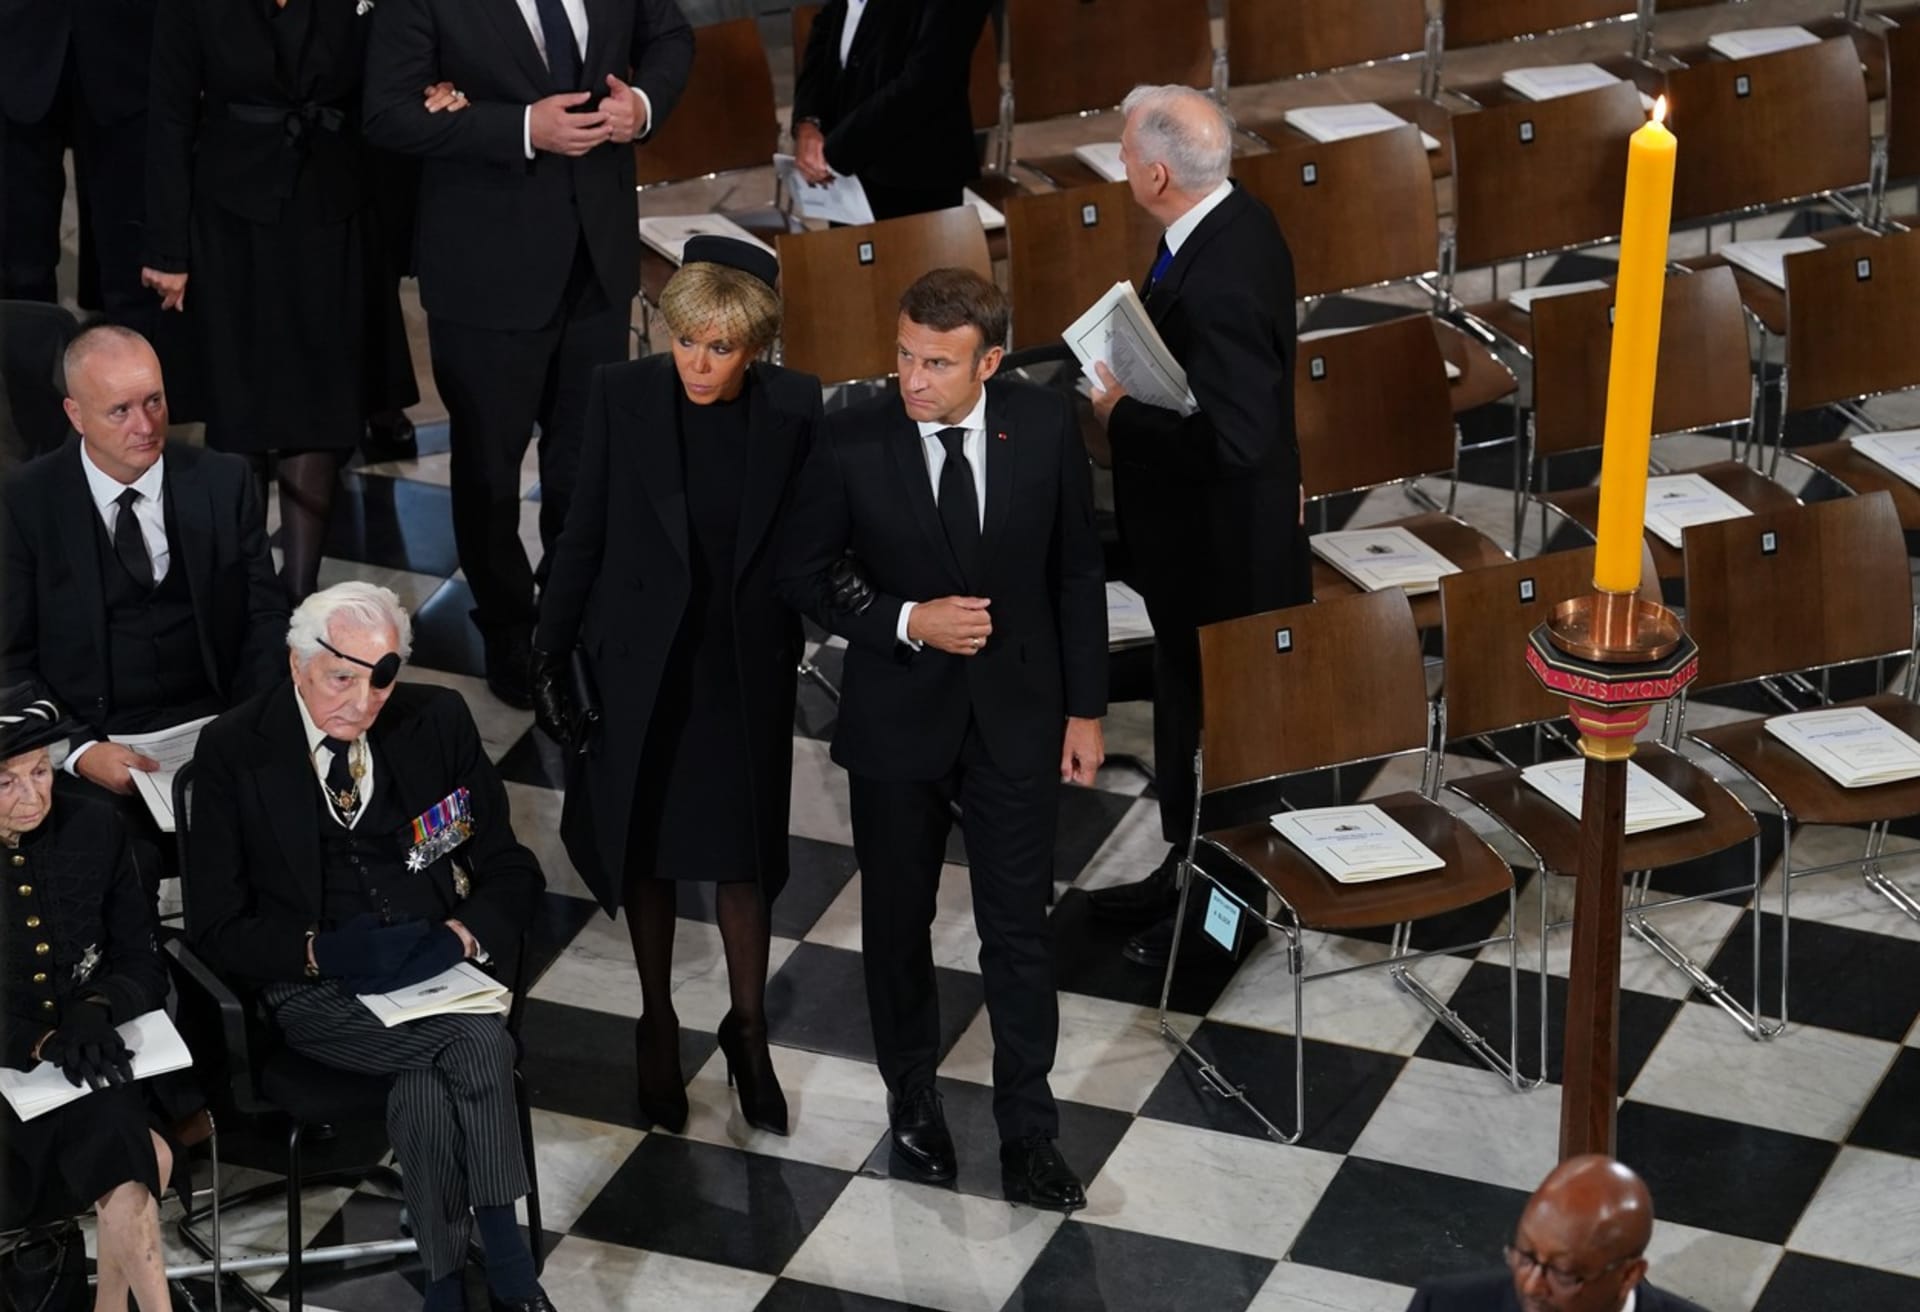 Na pohřeb už francouzský prezident Emmanuel Macron zvolil formální oděv